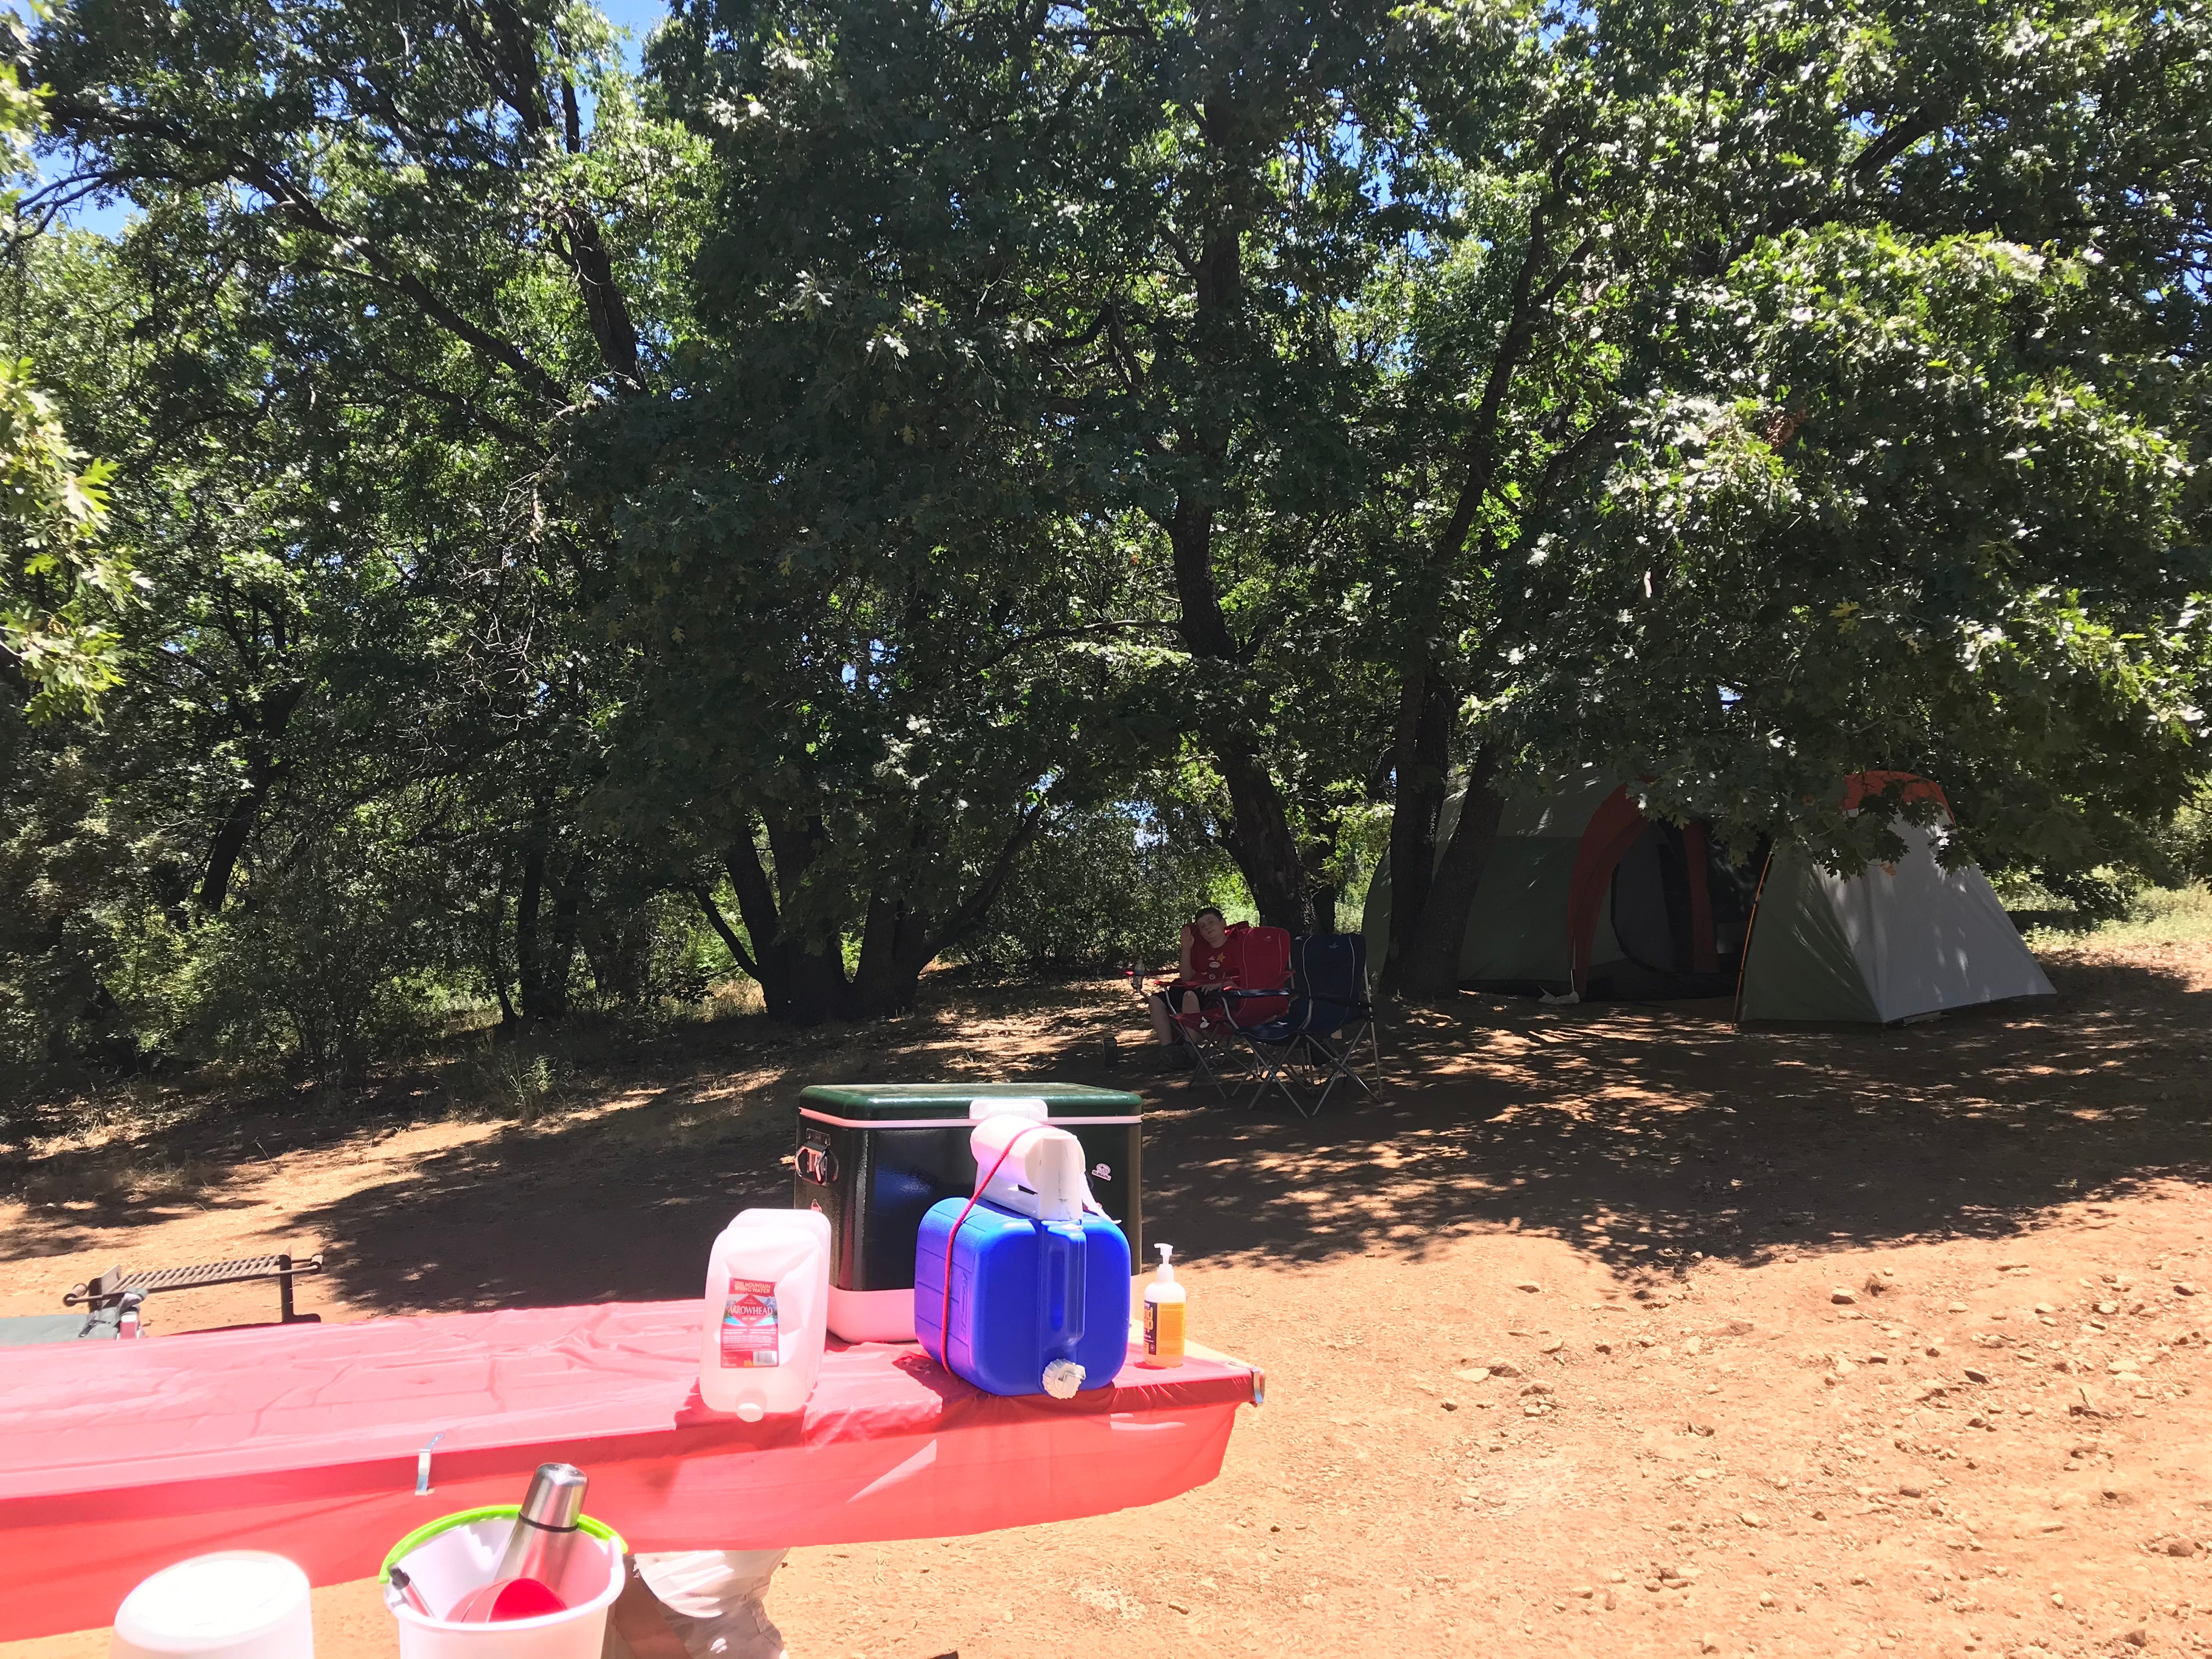 Our campsite (#207)